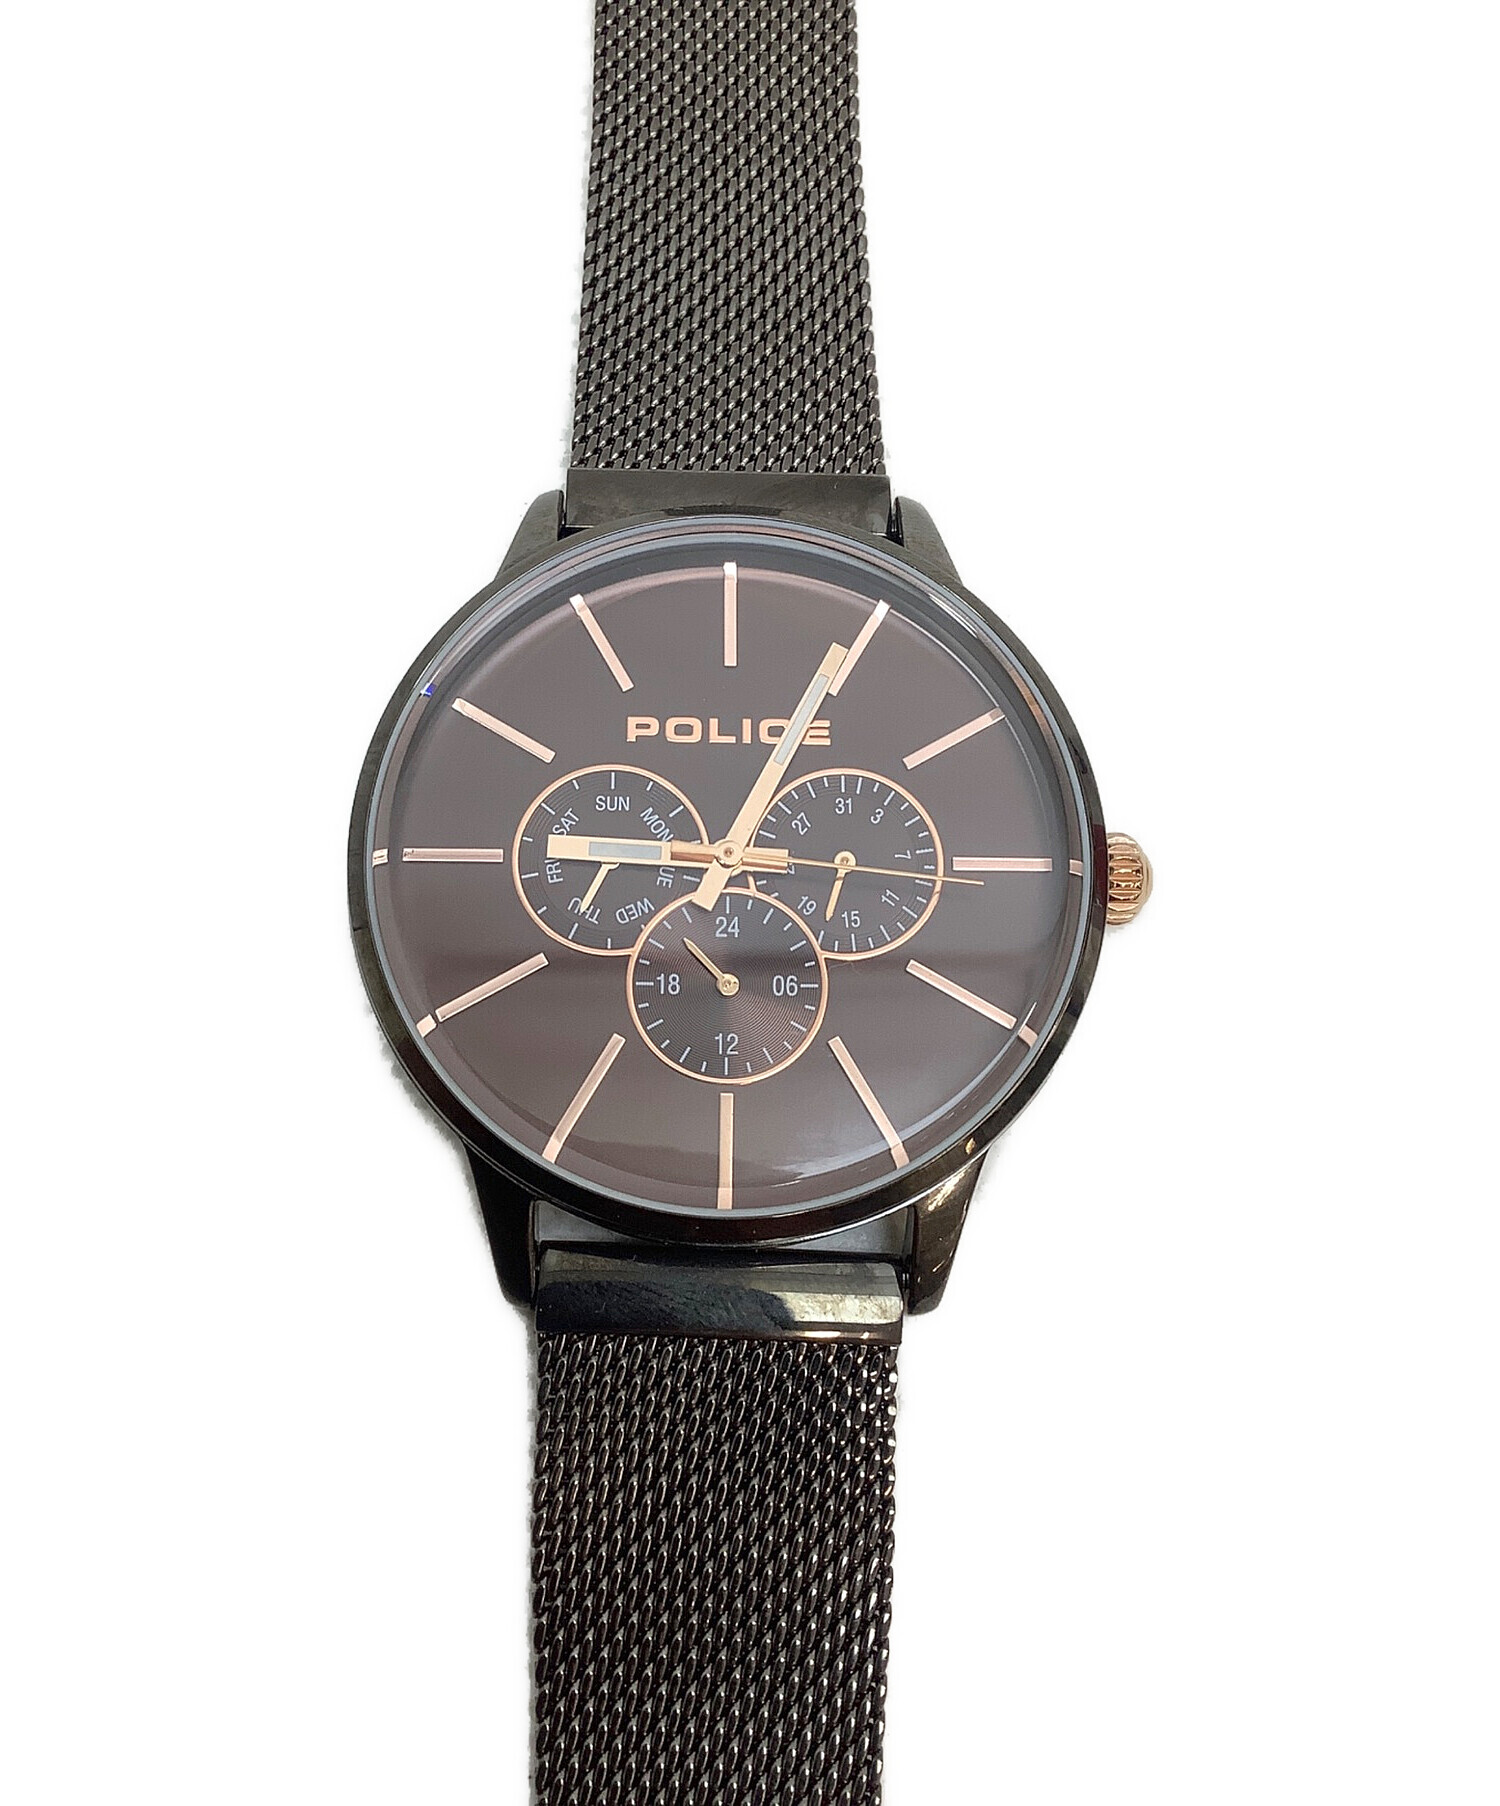 9,360円ポリス POLICE 14701JSB メンズ 腕時計 金属 ブラック 未使用